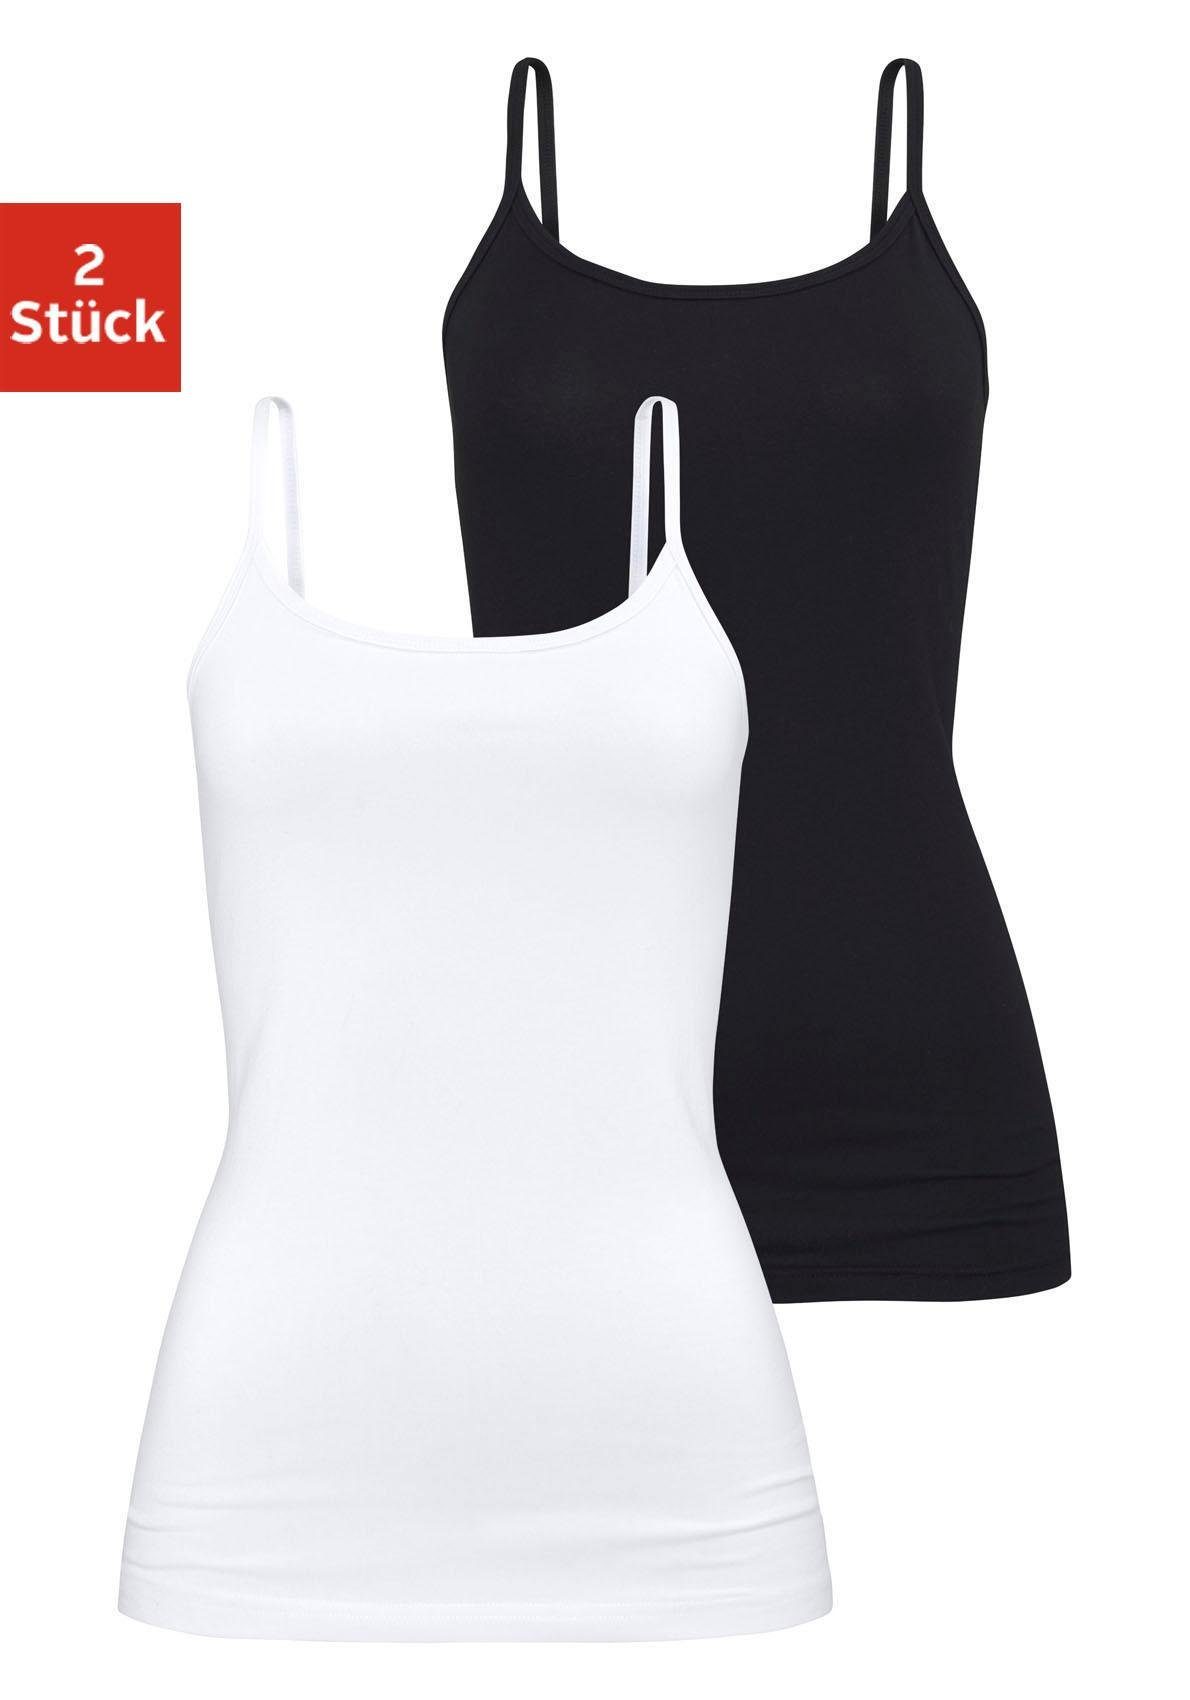 H.I.S Unterhemd (2er-Pack) aus elastischer Baumwoll-Qualität, Spaghettiträger-Top, Unterziehshirt weiß schwarz